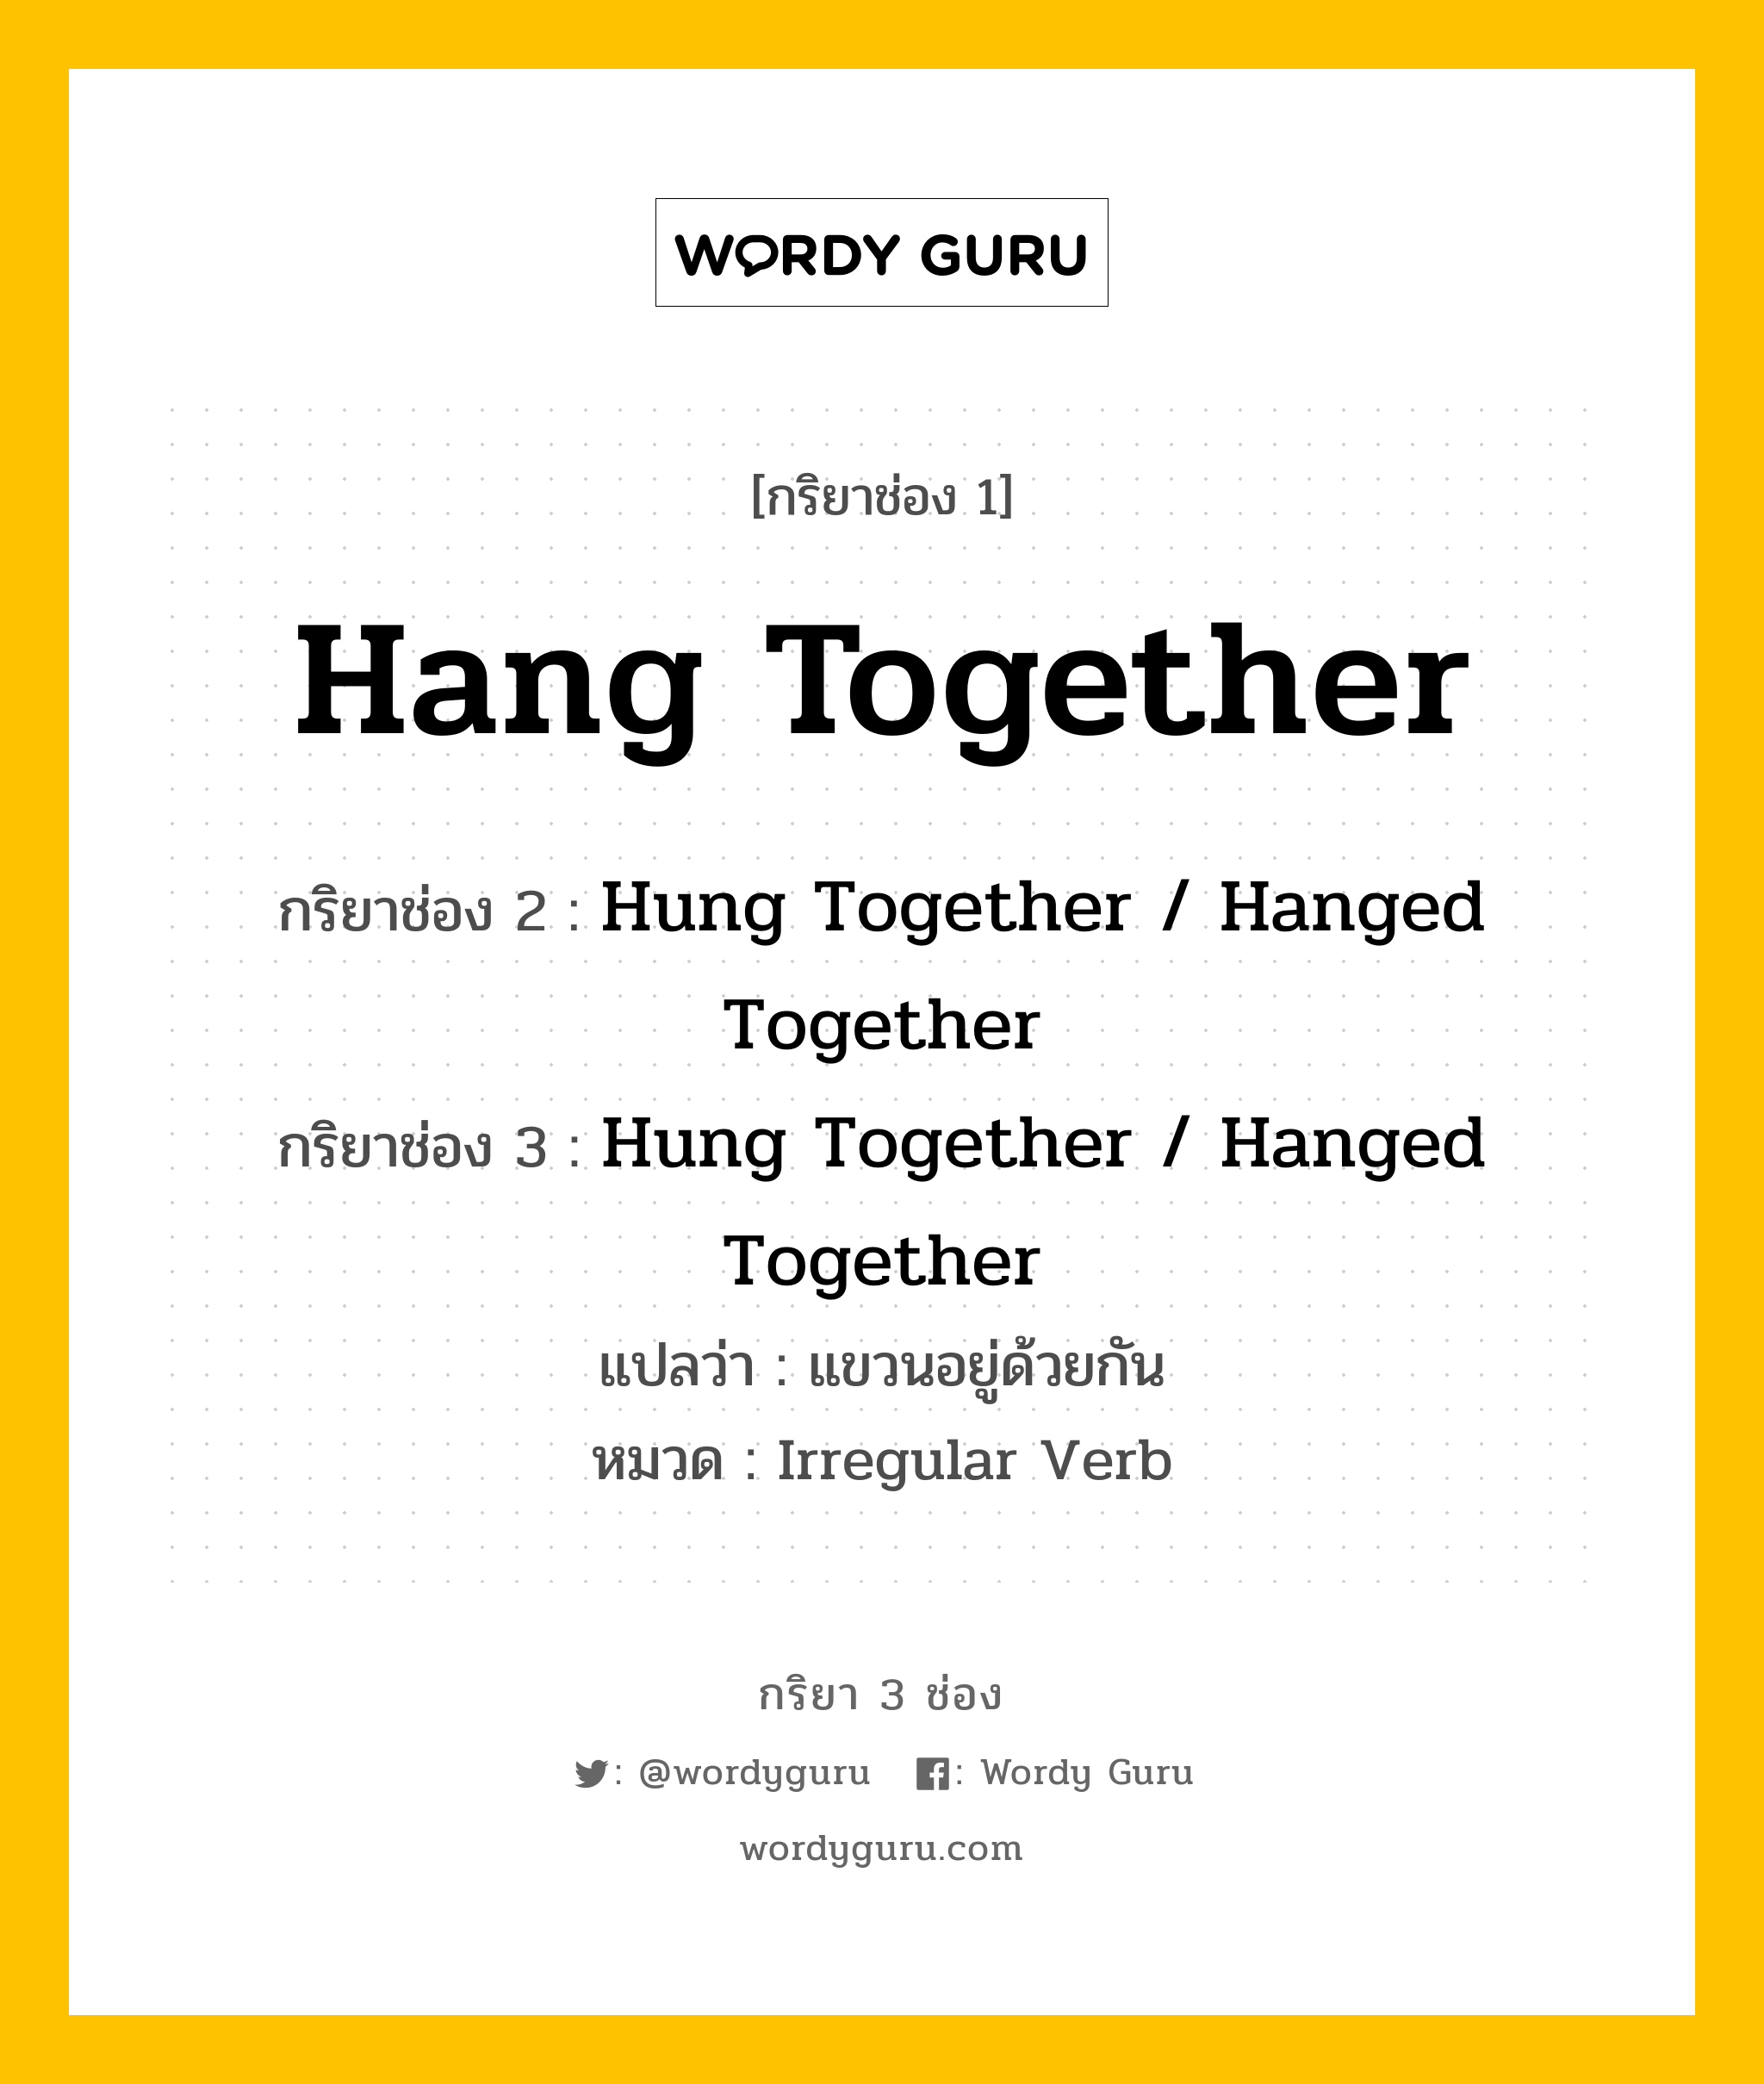 กริยา 3 ช่อง ของ Hang Together คืออะไร? มาดูคำอ่าน คำแปลกันเลย, กริยาช่อง 1 Hang Together กริยาช่อง 2 Hung Together / Hanged Together กริยาช่อง 3 Hung Together / Hanged Together แปลว่า แขวนอยู่ด้วยกัน หมวด Irregular Verb หมวด Irregular Verb